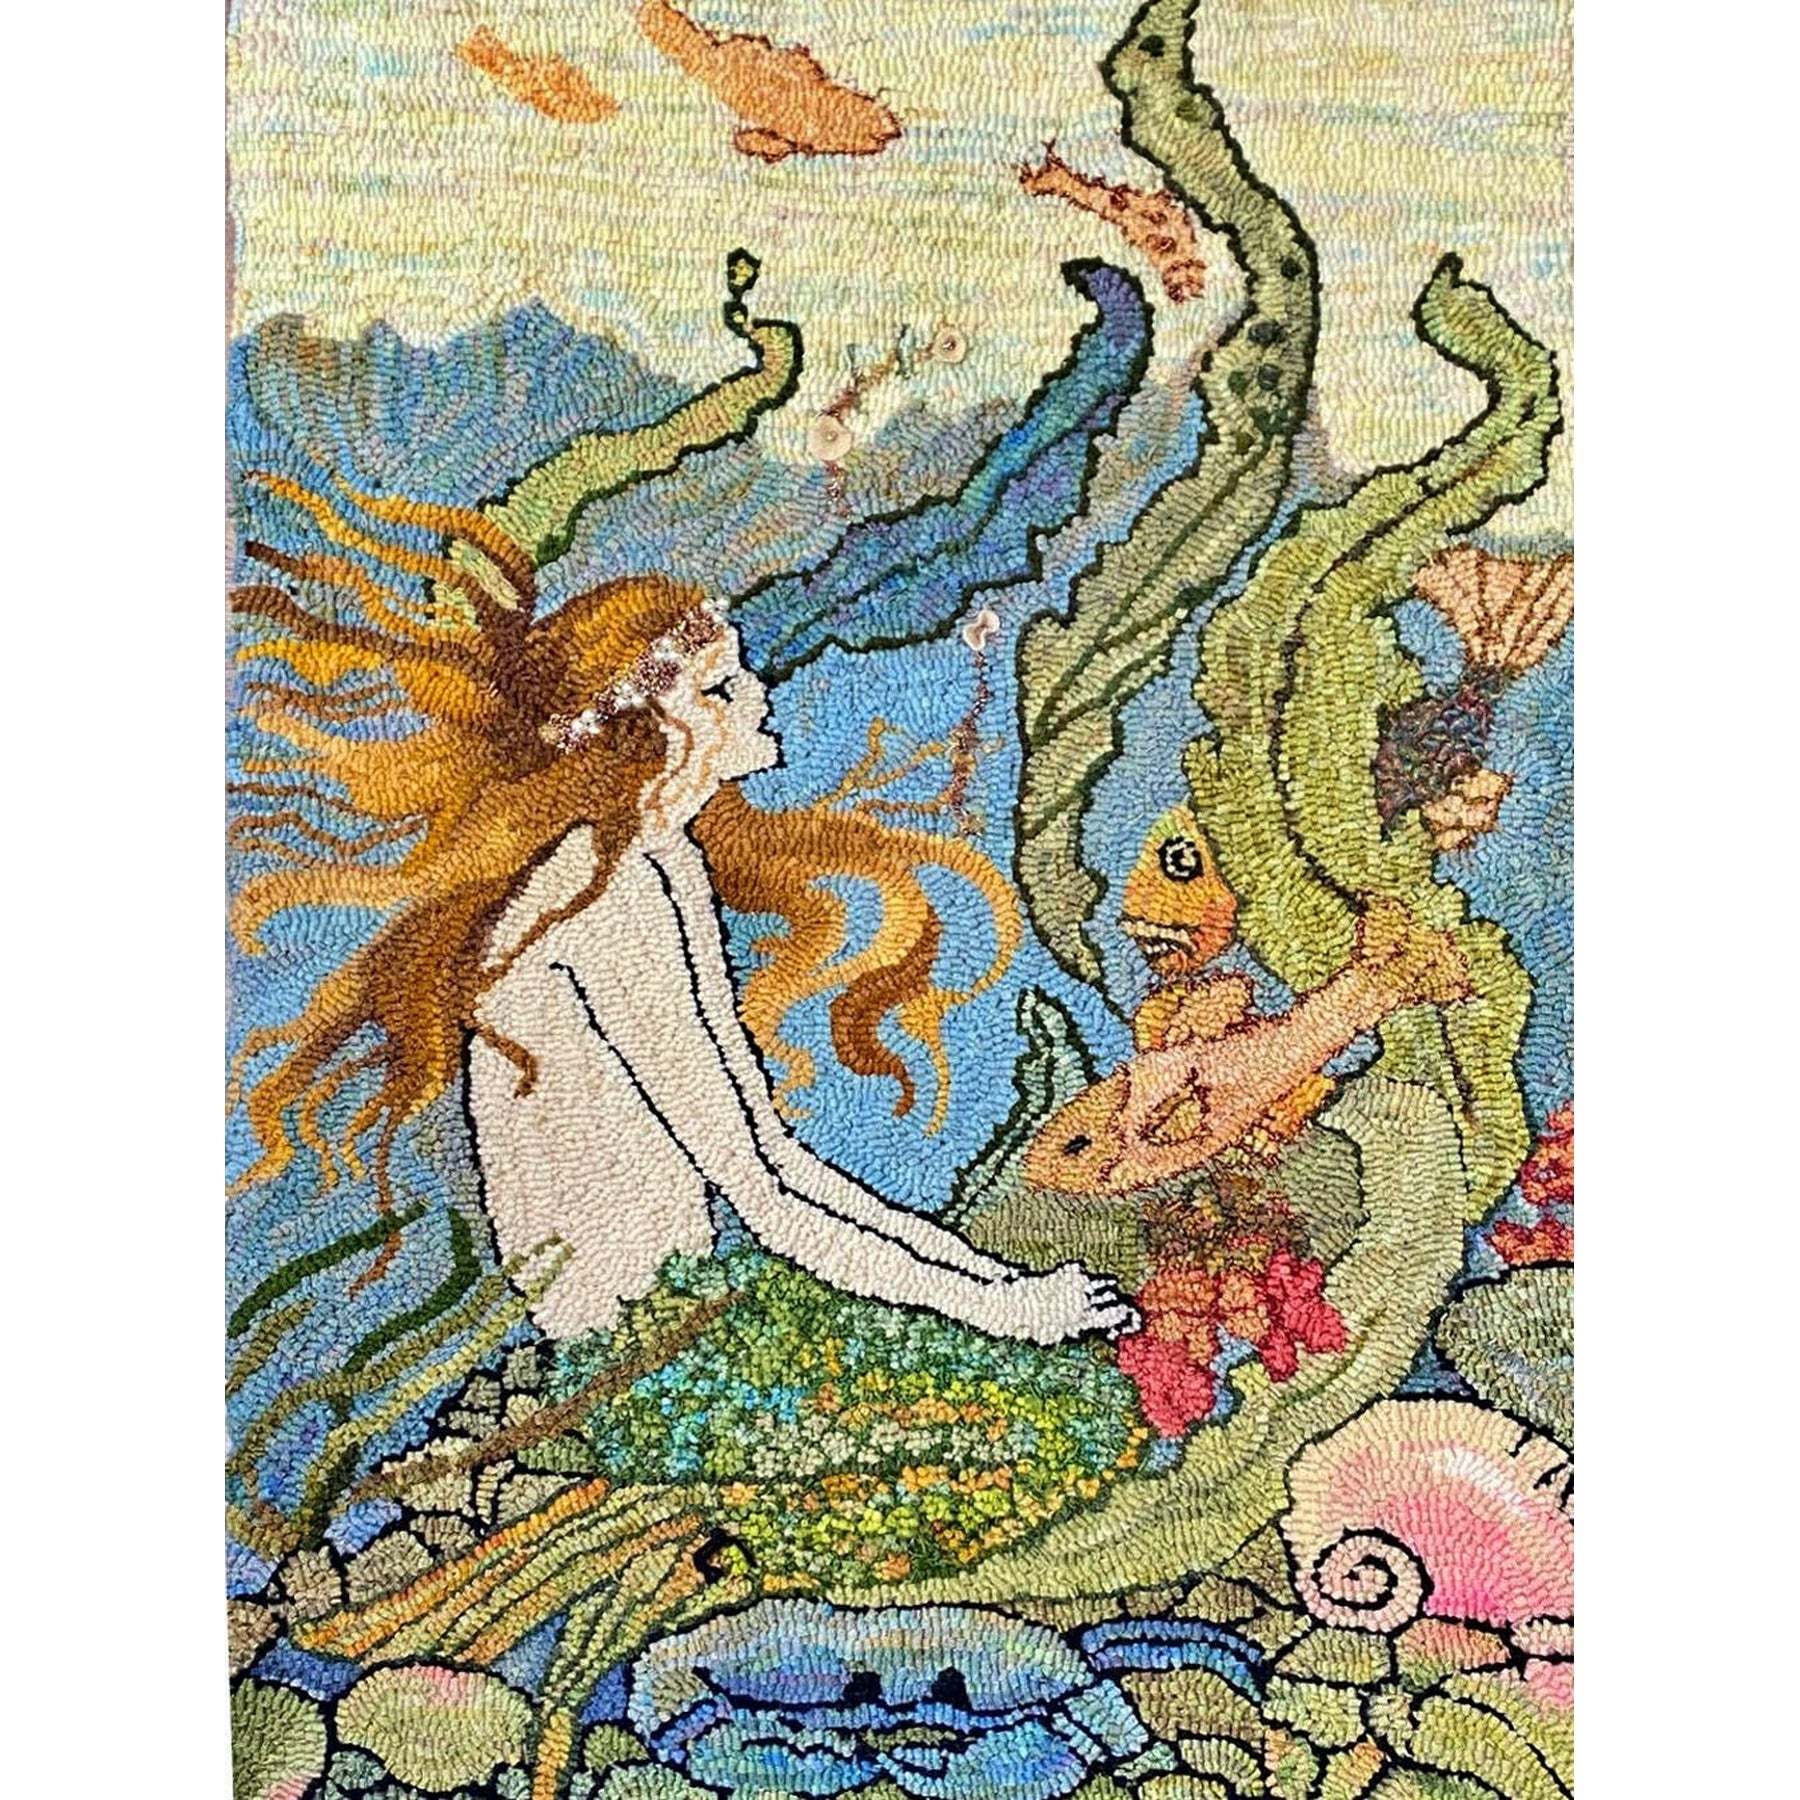 Vintage Mermaid, Ill. Elenore Plaisted Abbott, 1922, rug hooked by Suzanne Sandvik